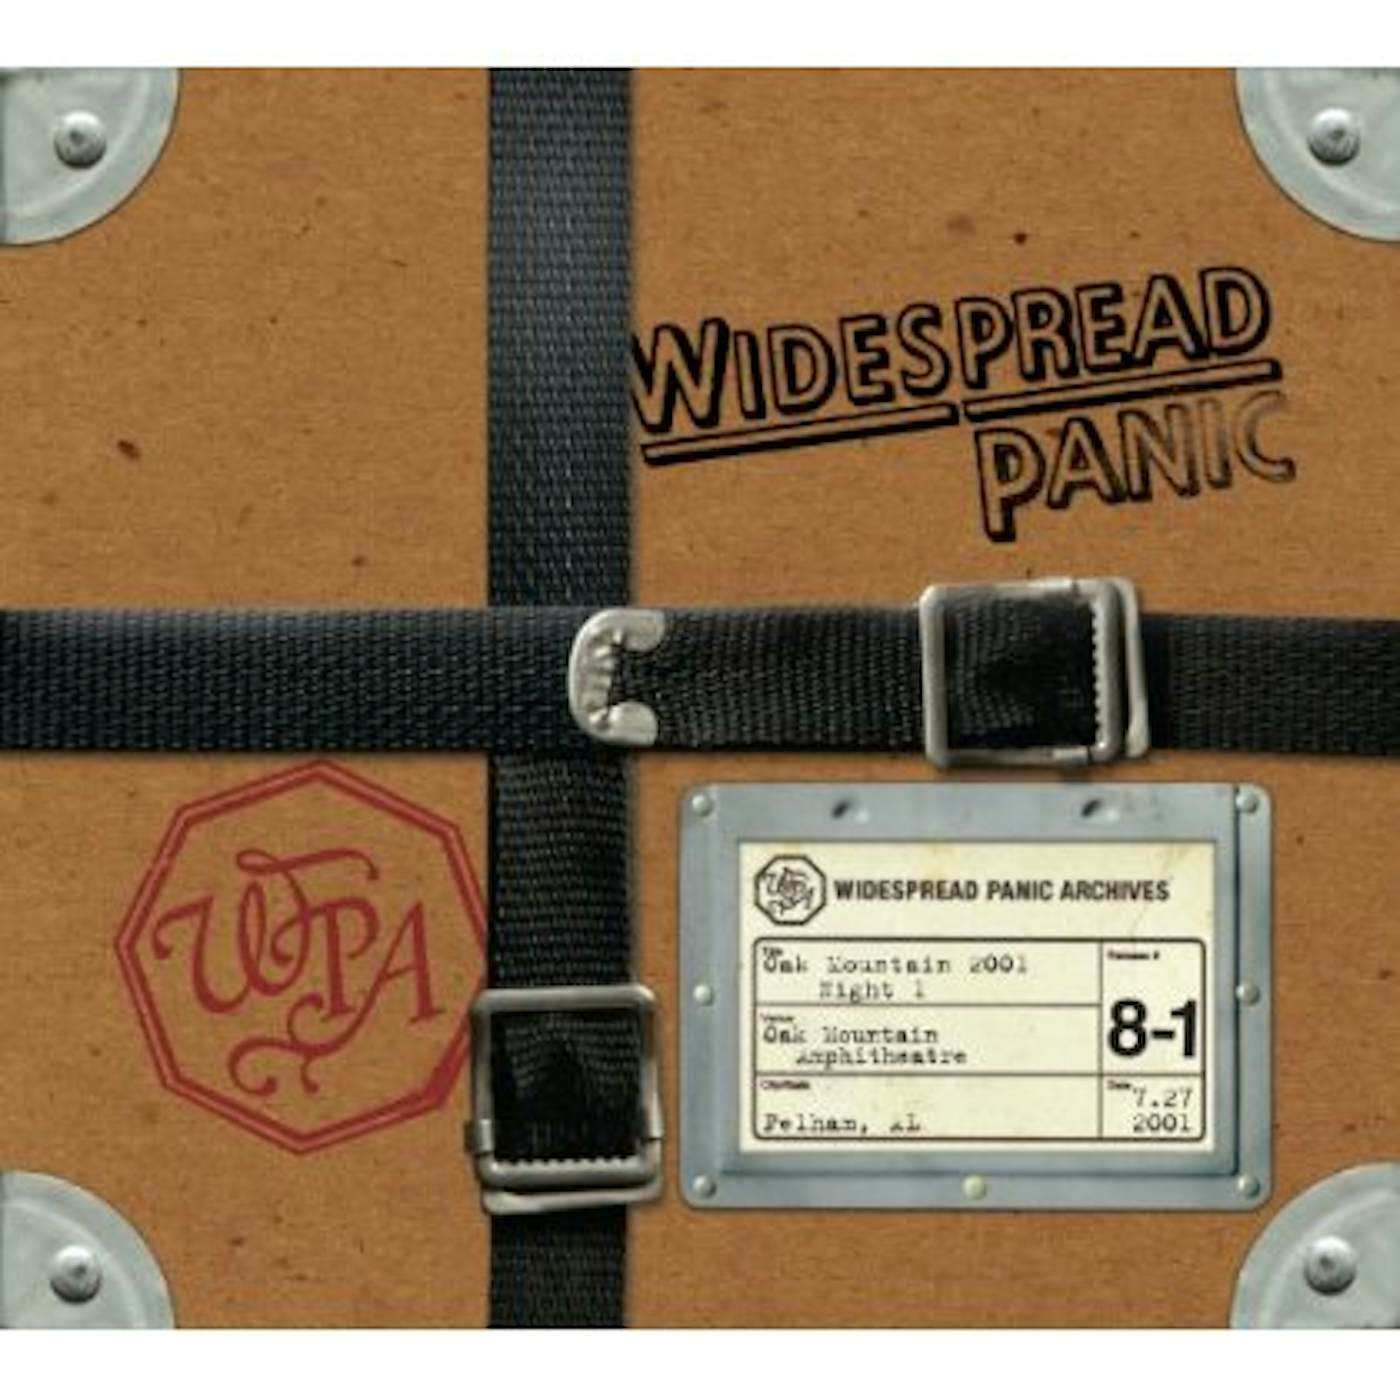 Widespread Panic OAK MOUNTAIN 2001 - NIGHT 1 CD